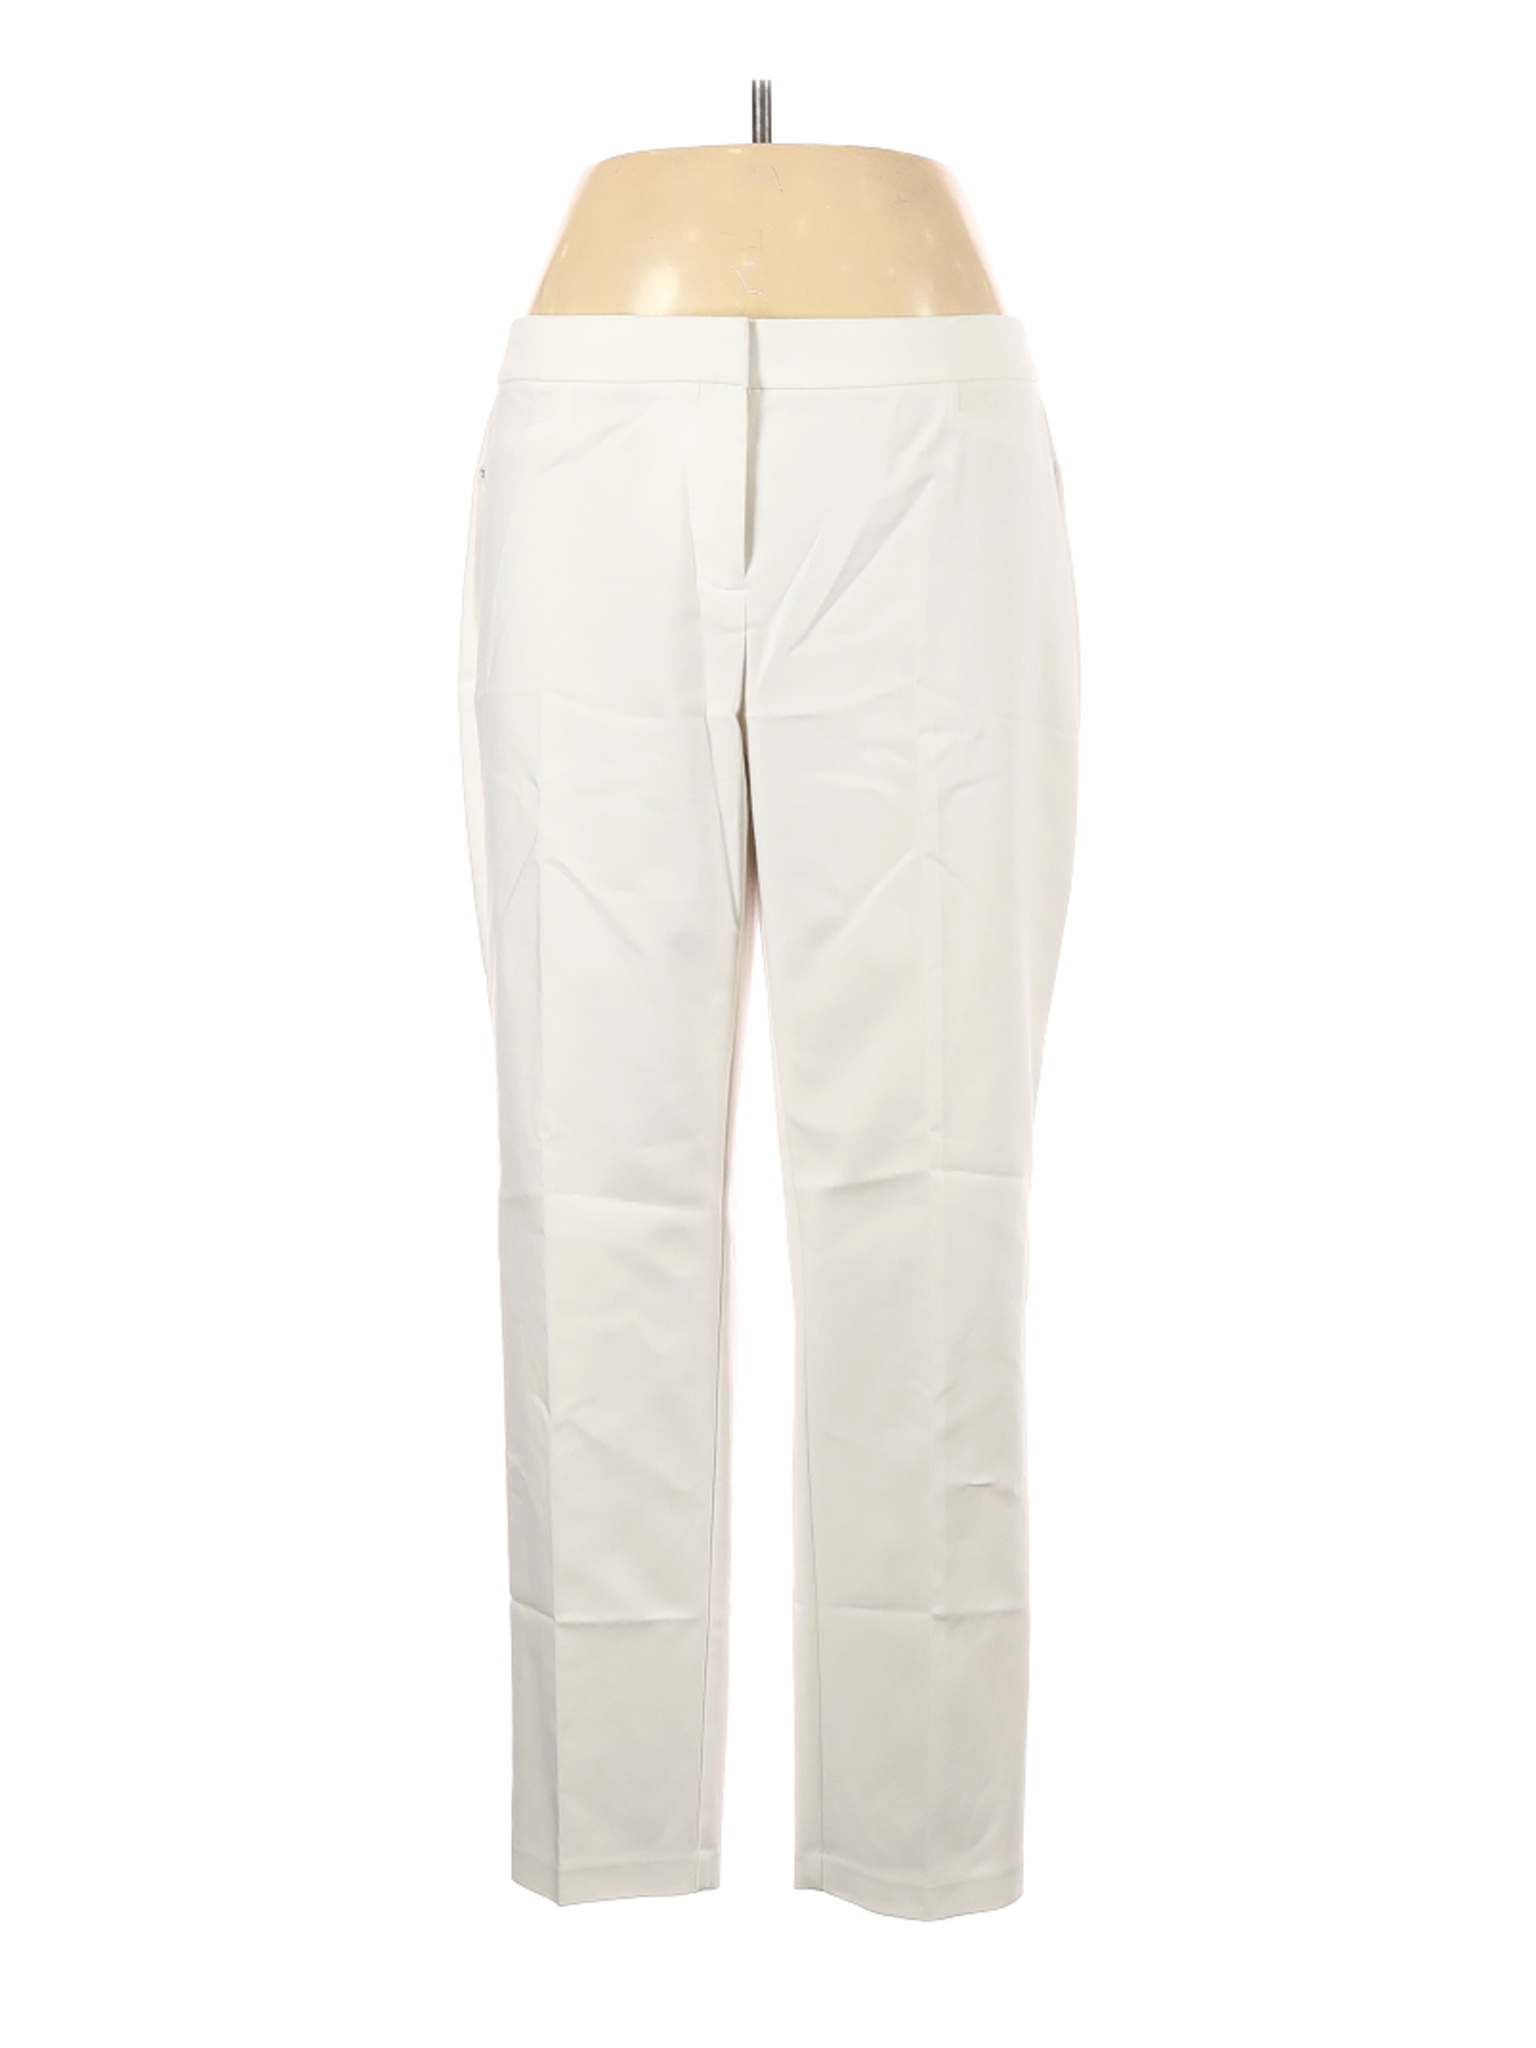 Rafaella Women White Casual Pants 12 | eBay